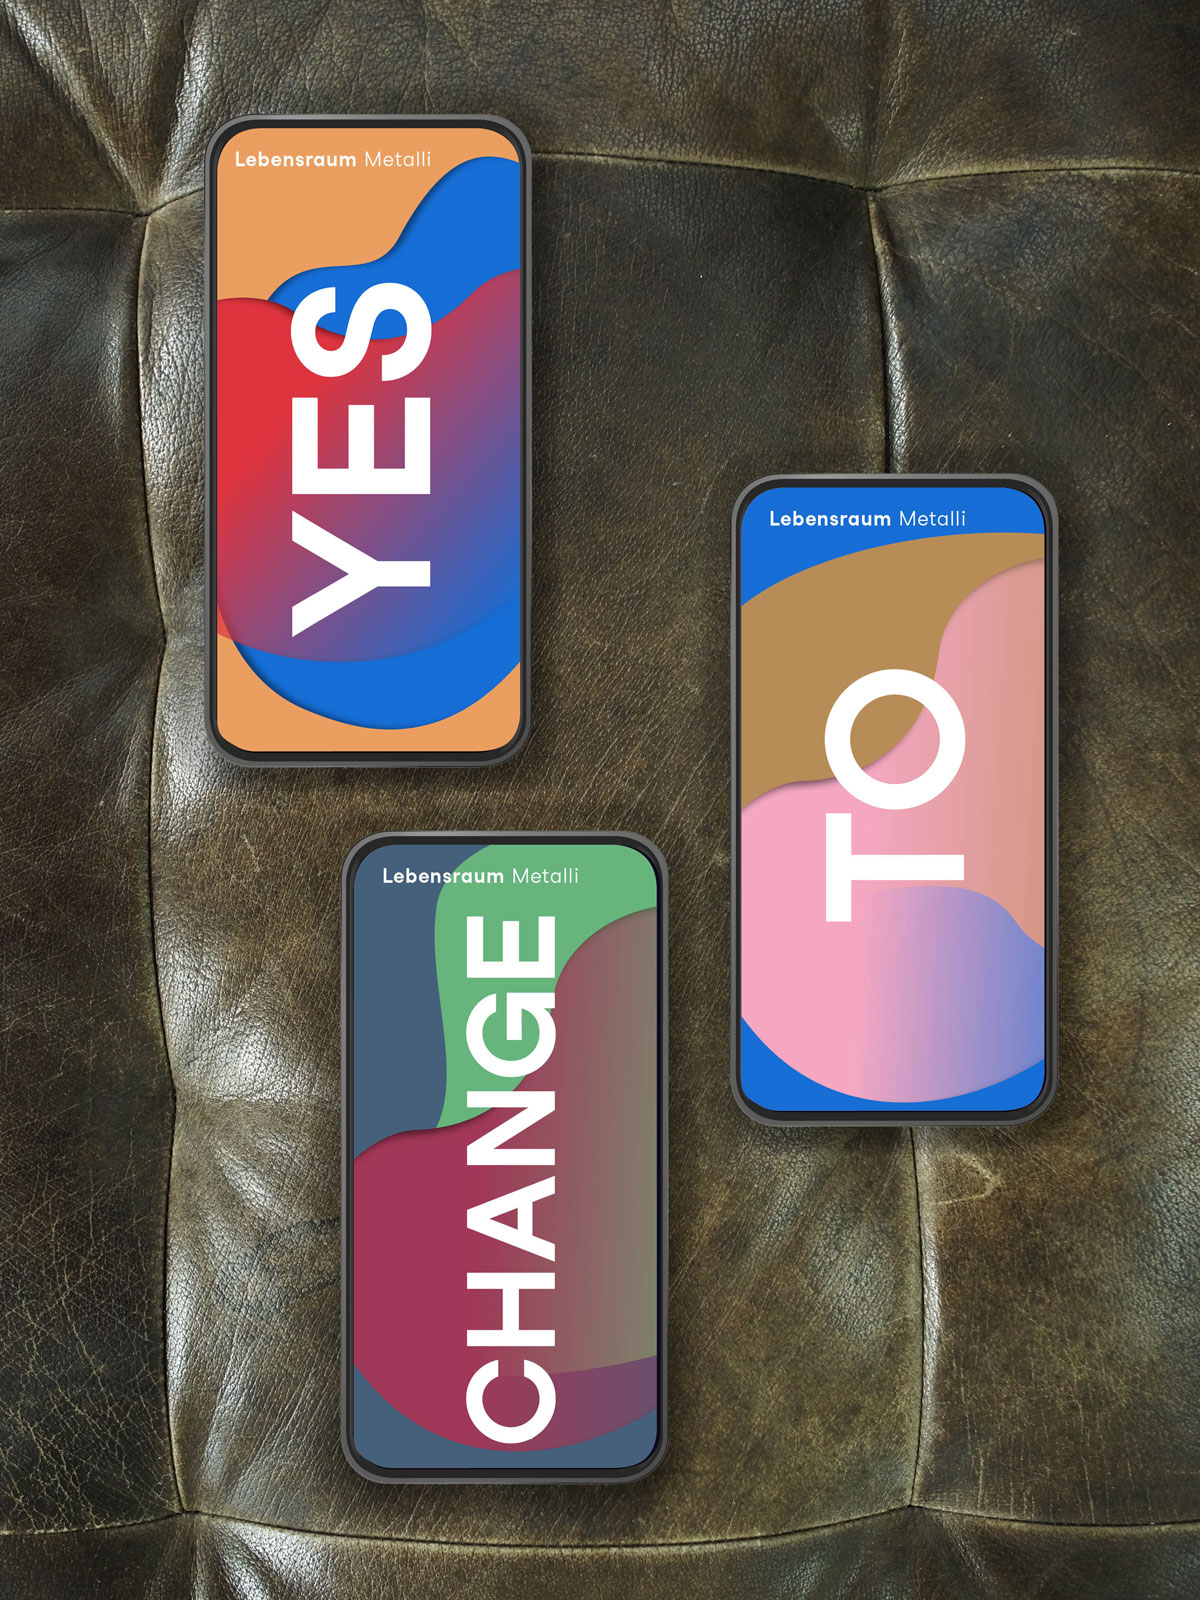 Mockup für Lebensraum Metalli: Smartphone-Ausschnitte "Yes to Change".